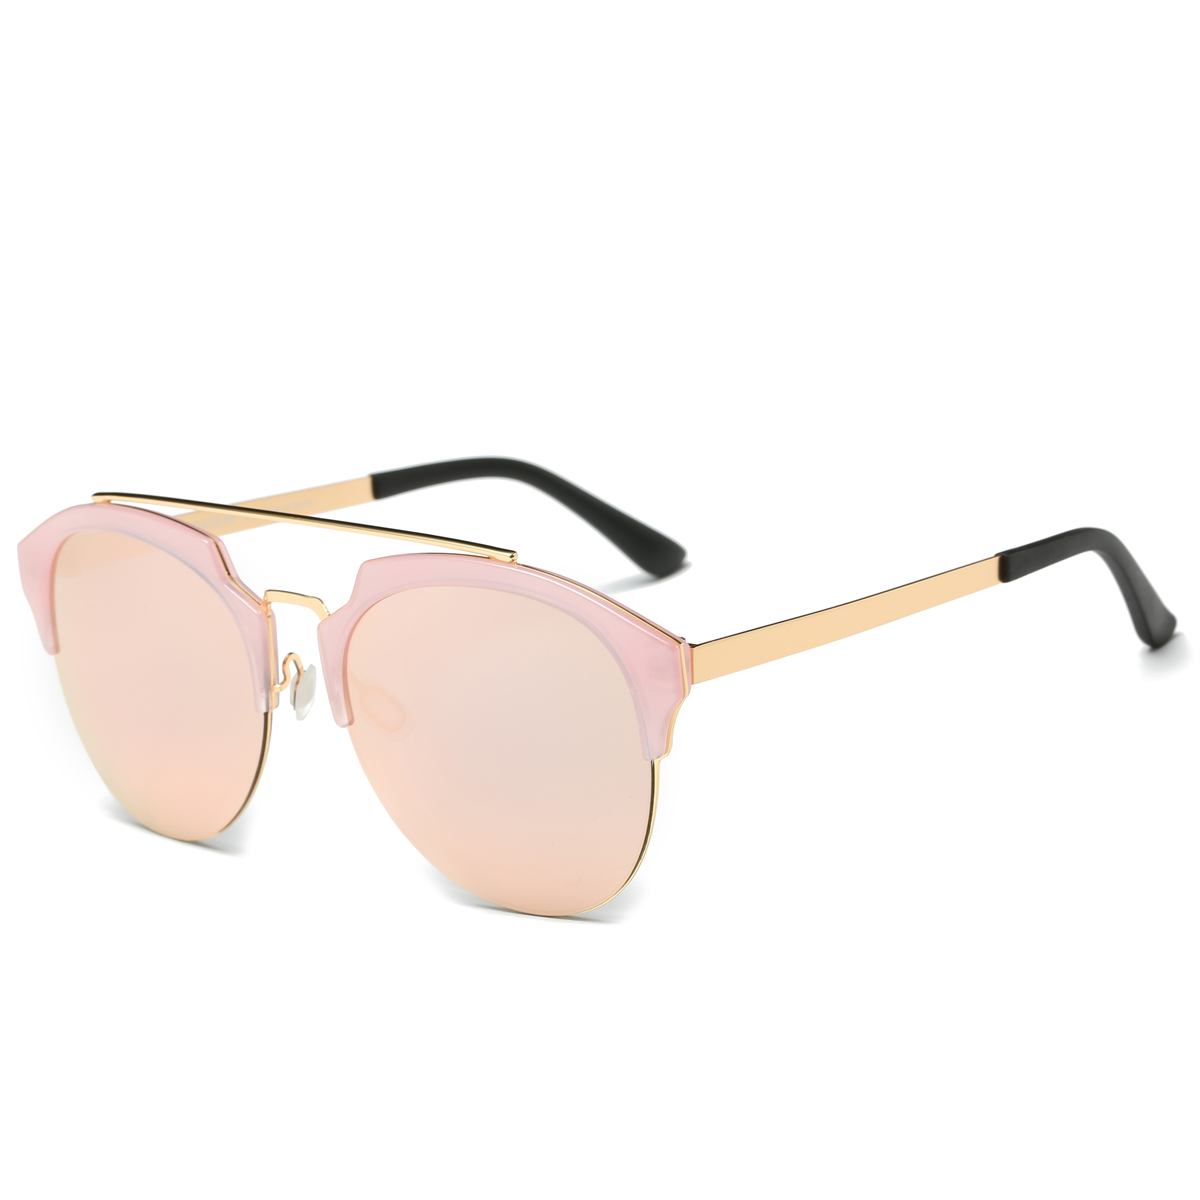 Dasein Semi Rimless Polarized Sunglasses Women Men Retro Sunglasses - image 3 of 4